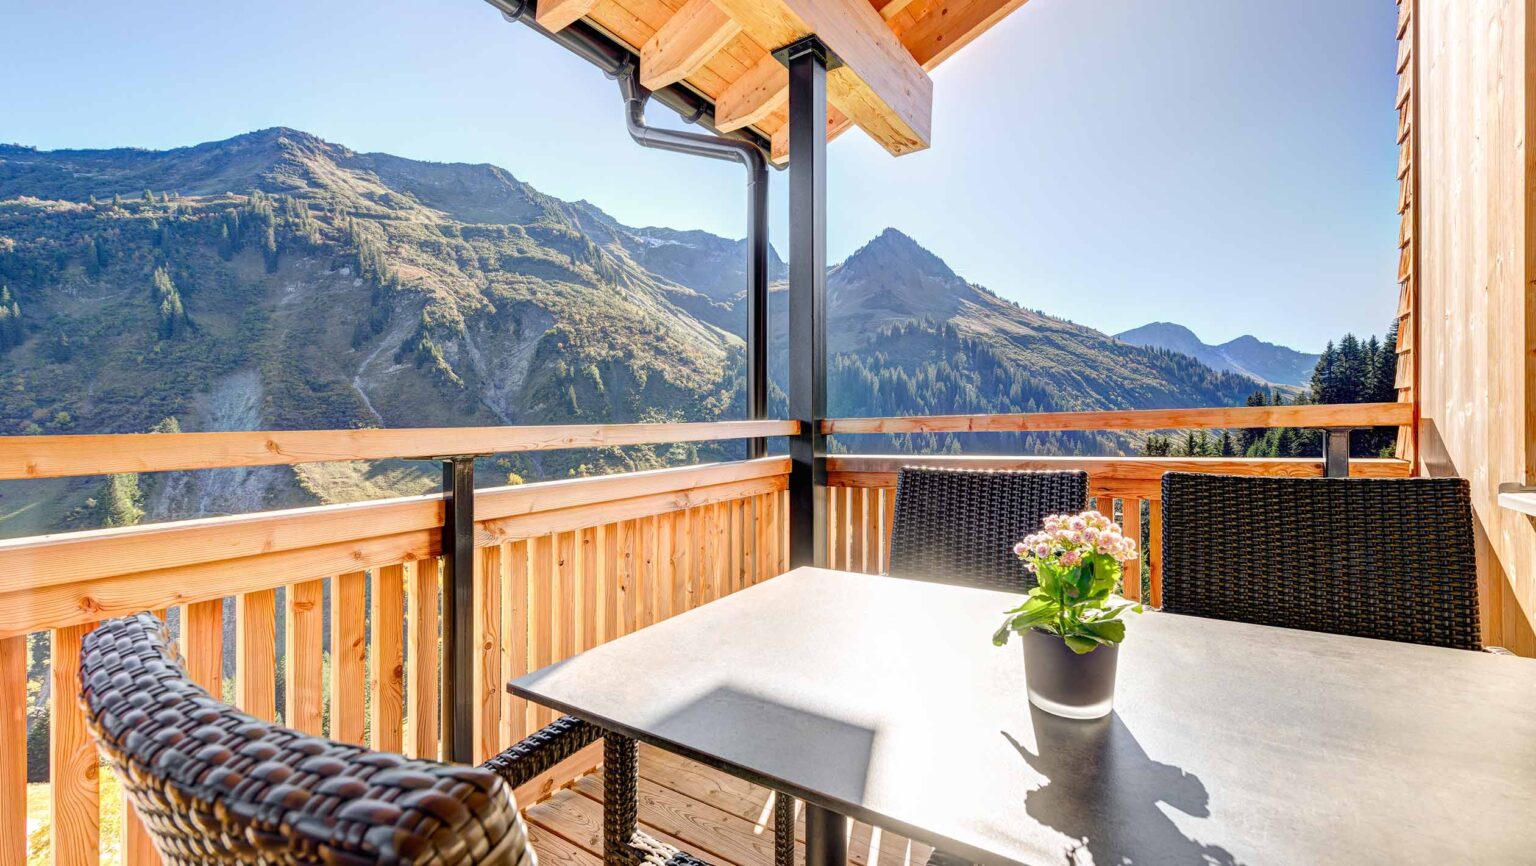 Blick auf Balkon von Apartment mit Tisch und Pflanze